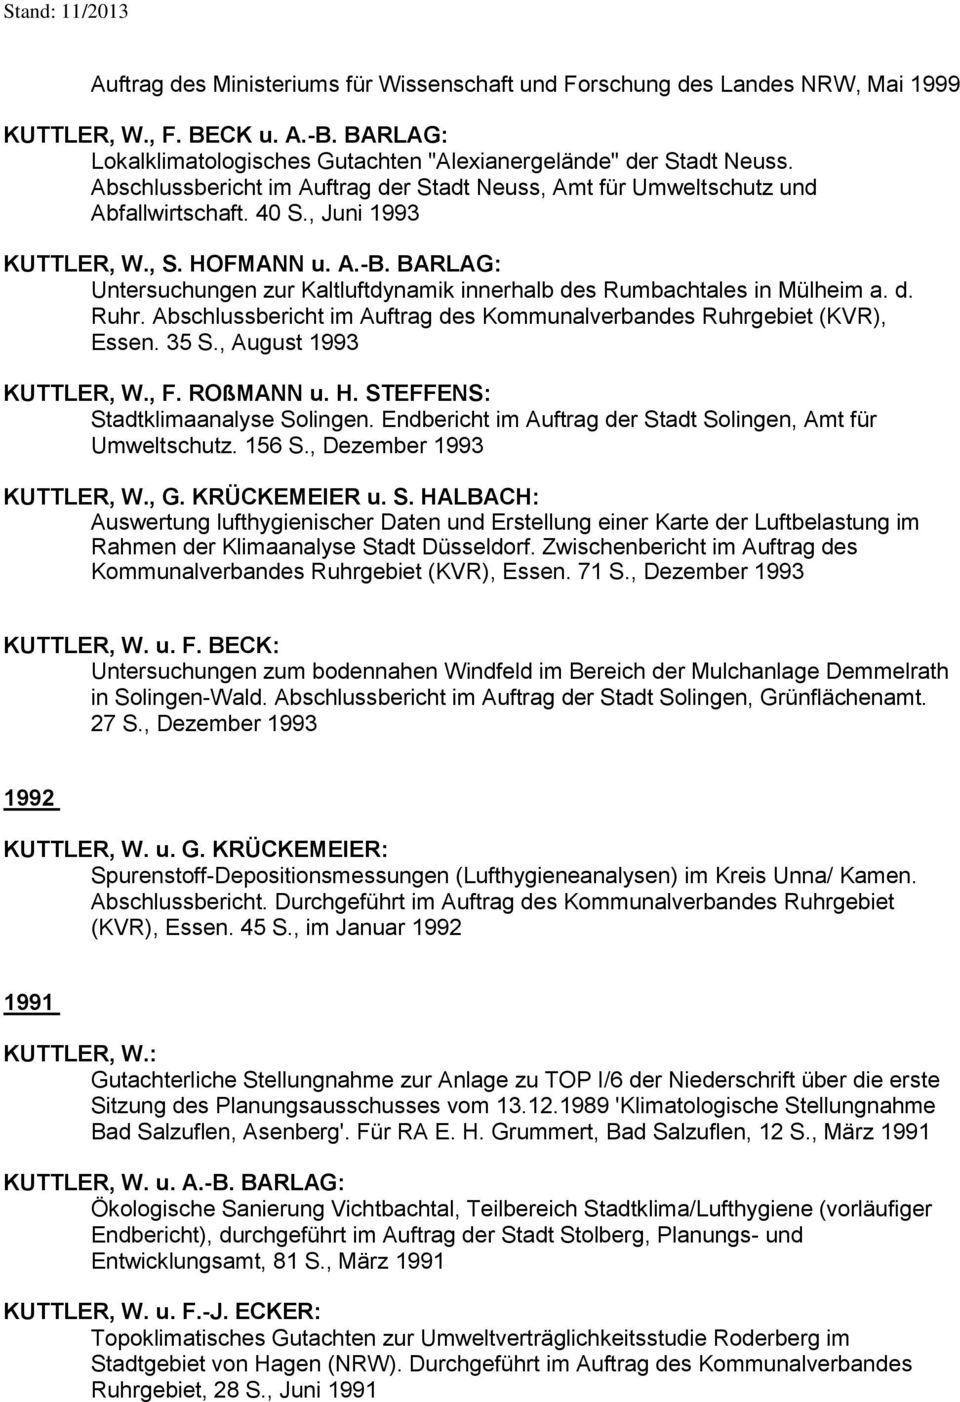 BARLAG: Untersuchungen zur Kaltluftdynamik innerhalb des Rumbachtales in Mülheim a. d. Ruhr. Abschlussbericht im Auftrag des Kommunalverbandes Ruhrgebiet (KVR), Essen. 35 S., August 1993 KUTTLER, W.